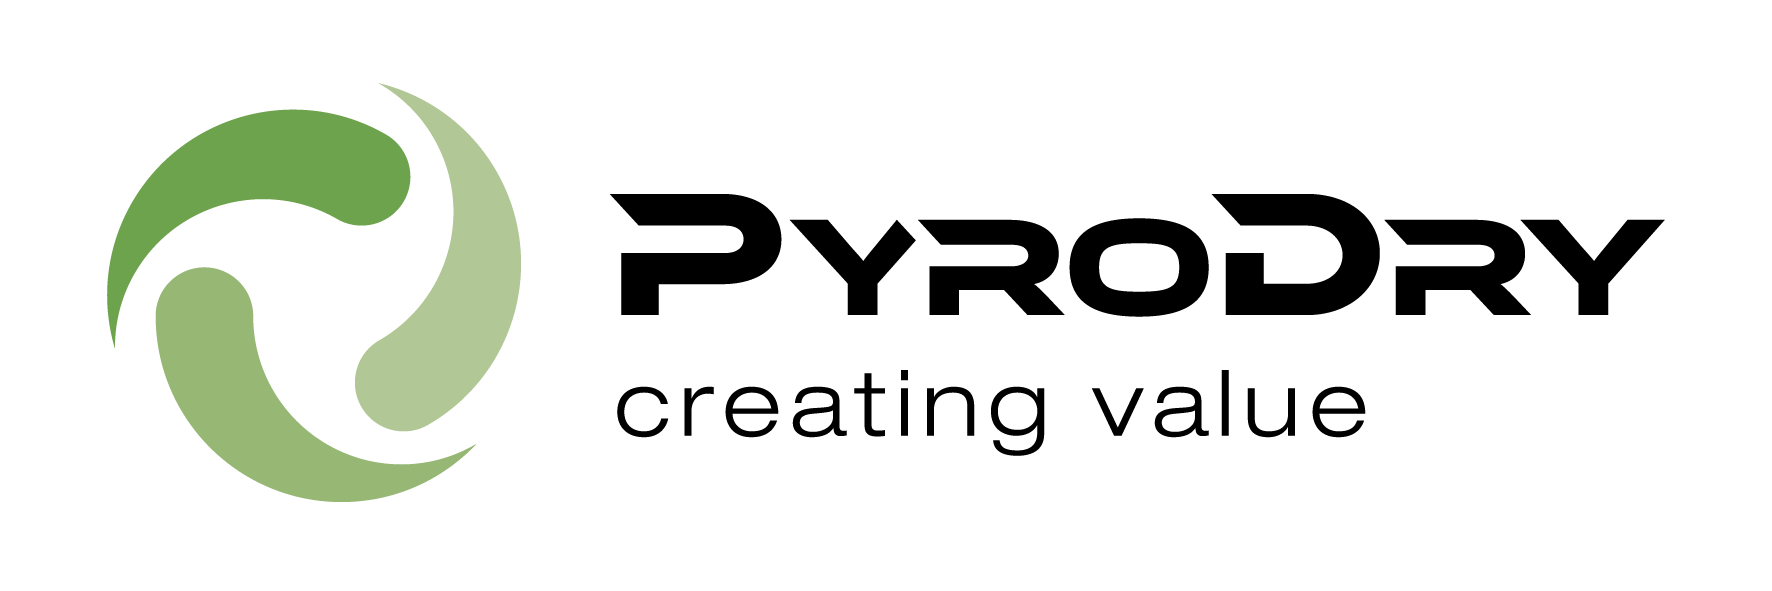 20220315 Pyrodry Logo Schwarz